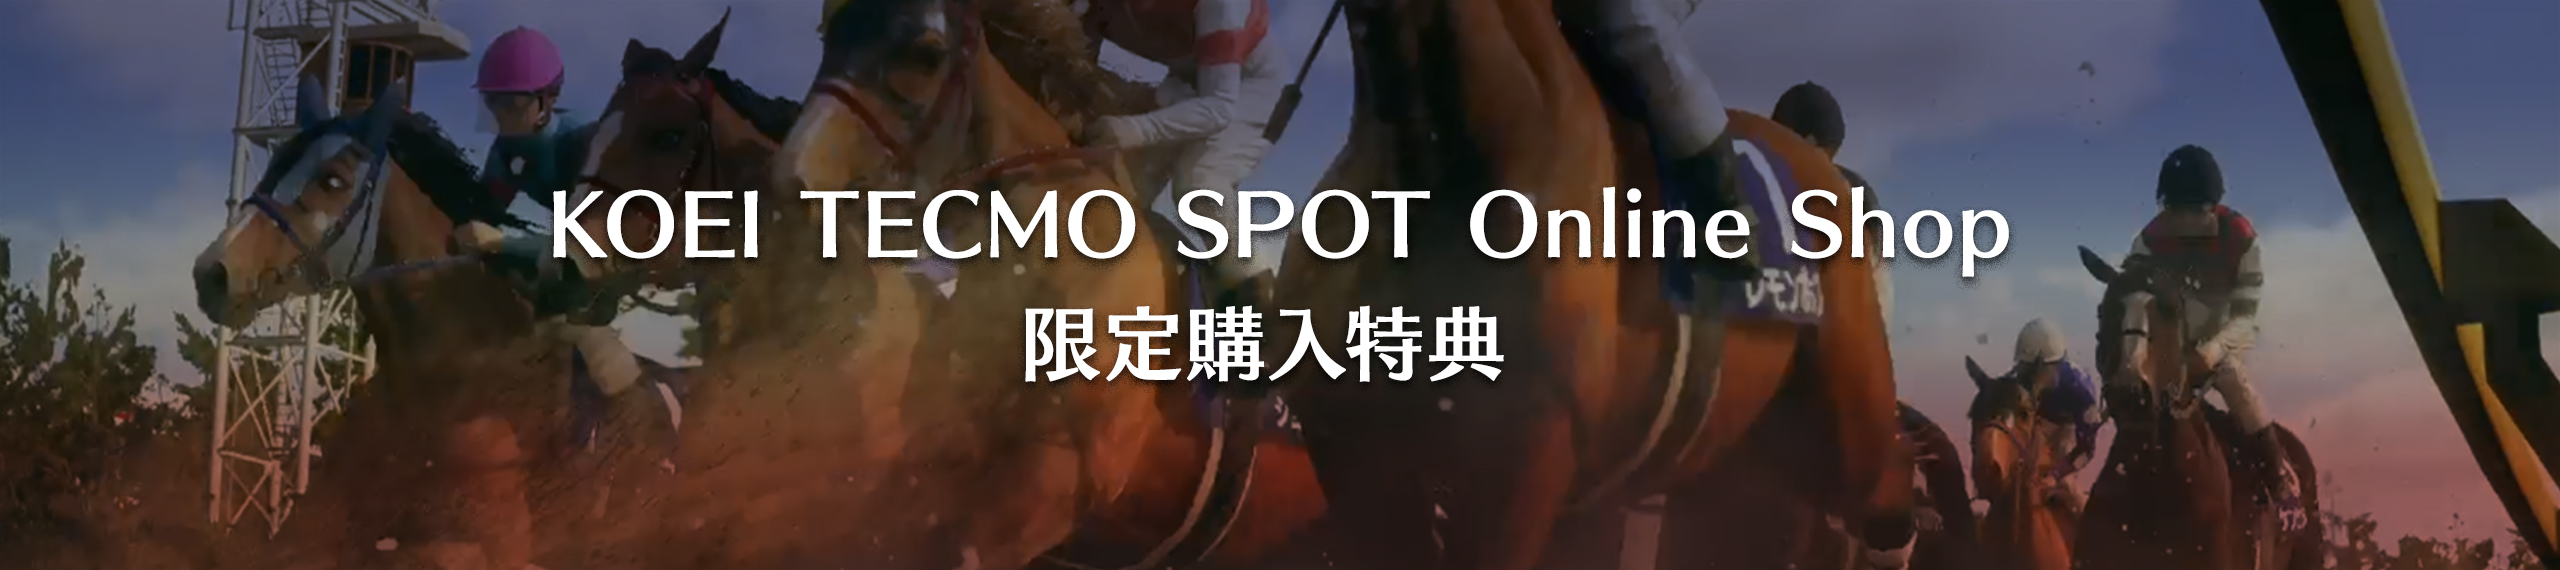 KOEI TECMO SPOT Online Shop限定購入特典